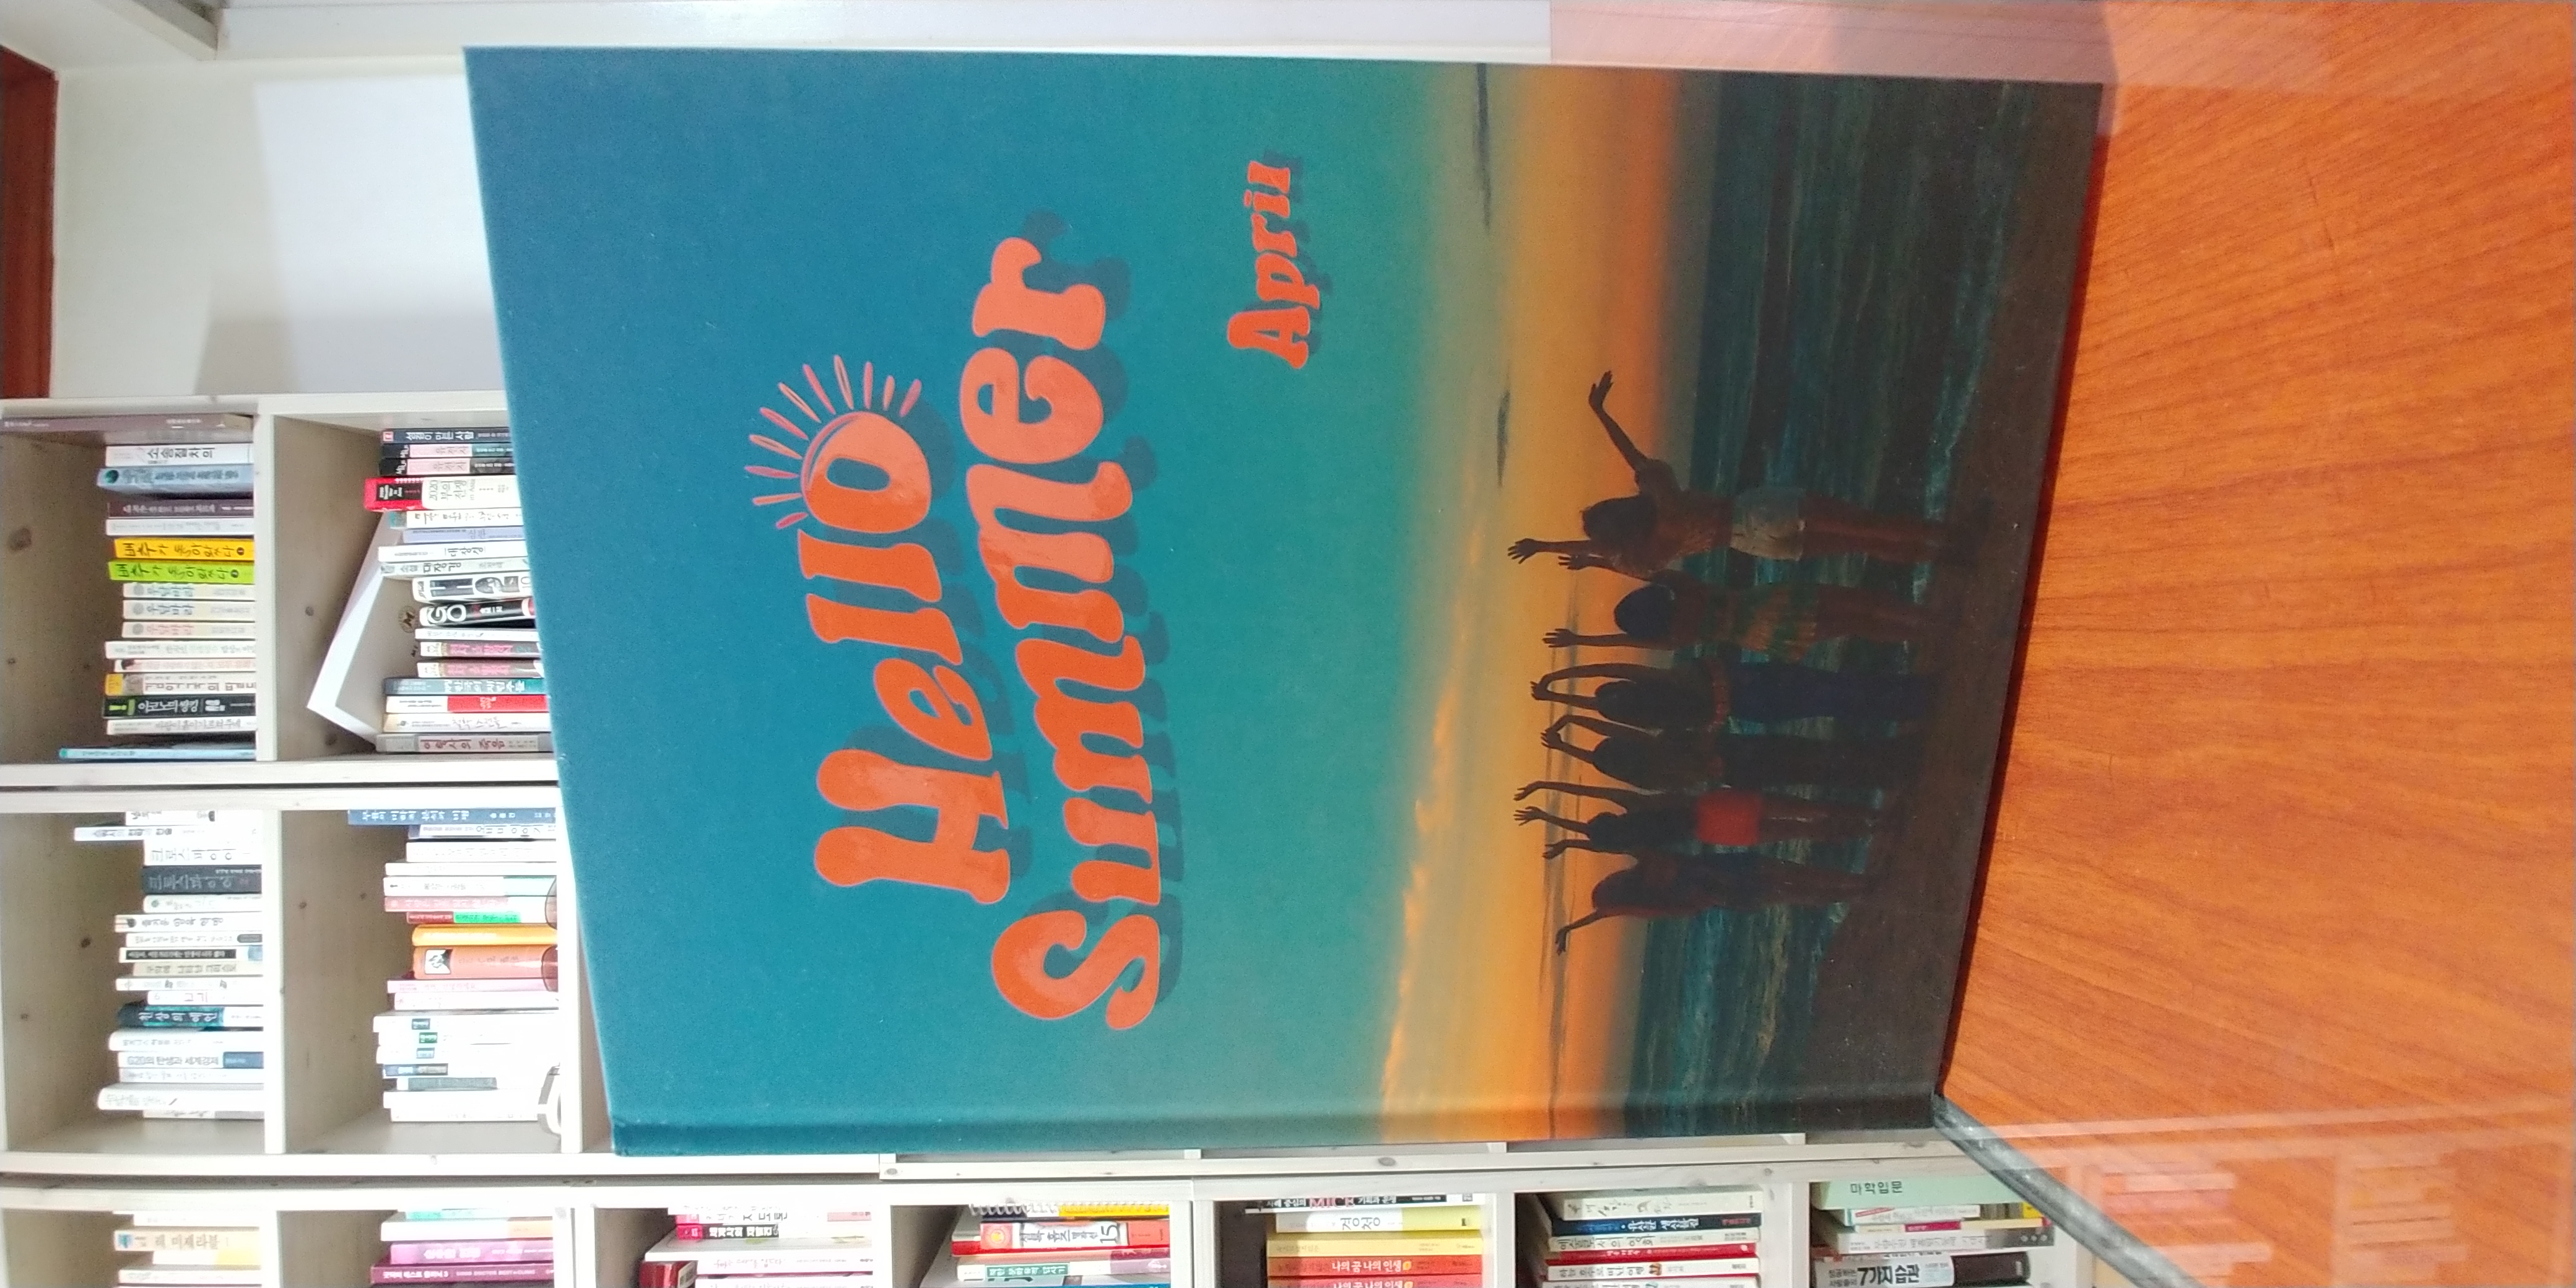 에이프릴 (APRIL) - Summer Special Album : Hello Summer [Summer NIGHT ver.]